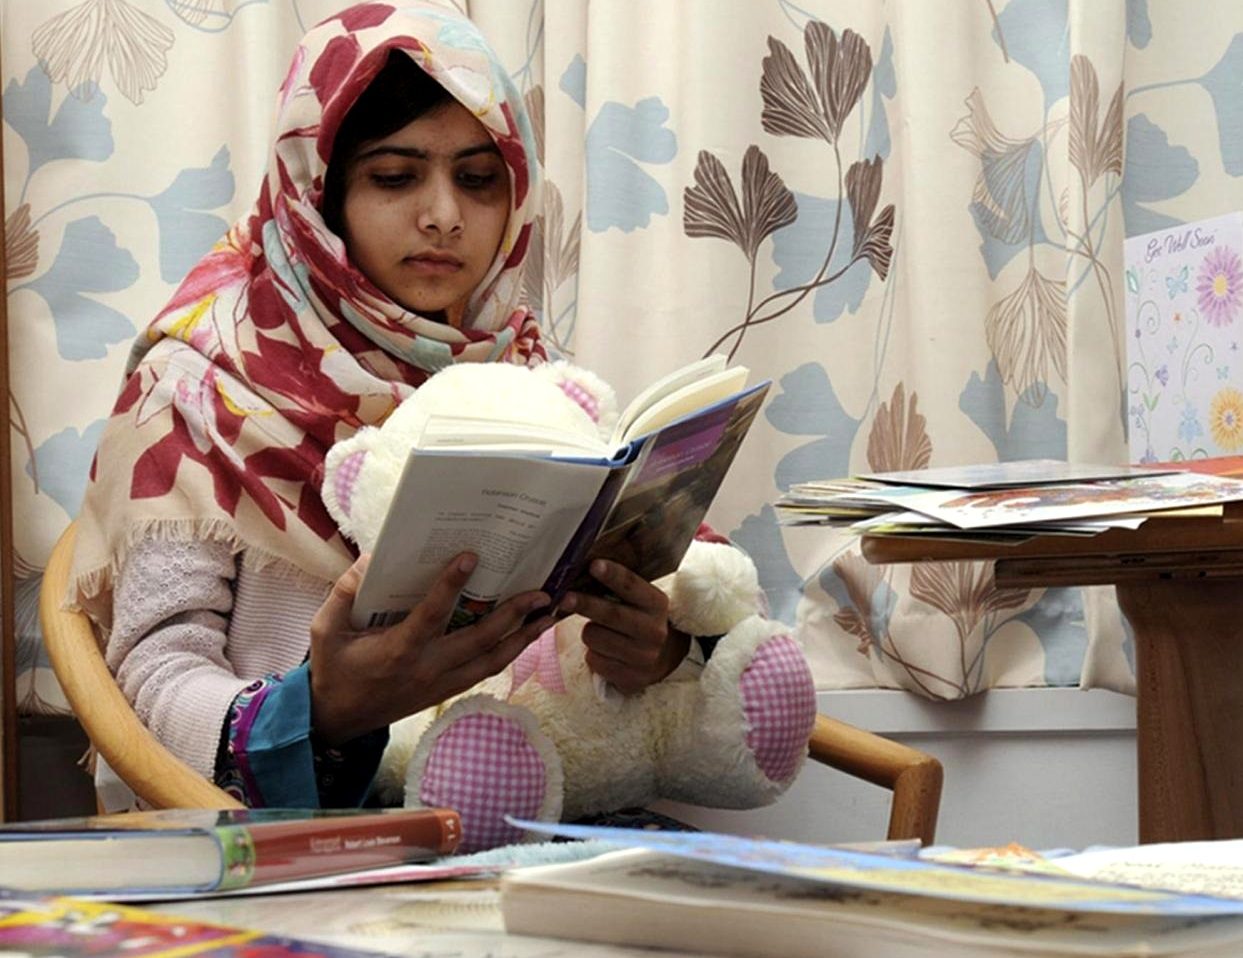 La pakistana Malala candidata al Nobel per la Pace 2013